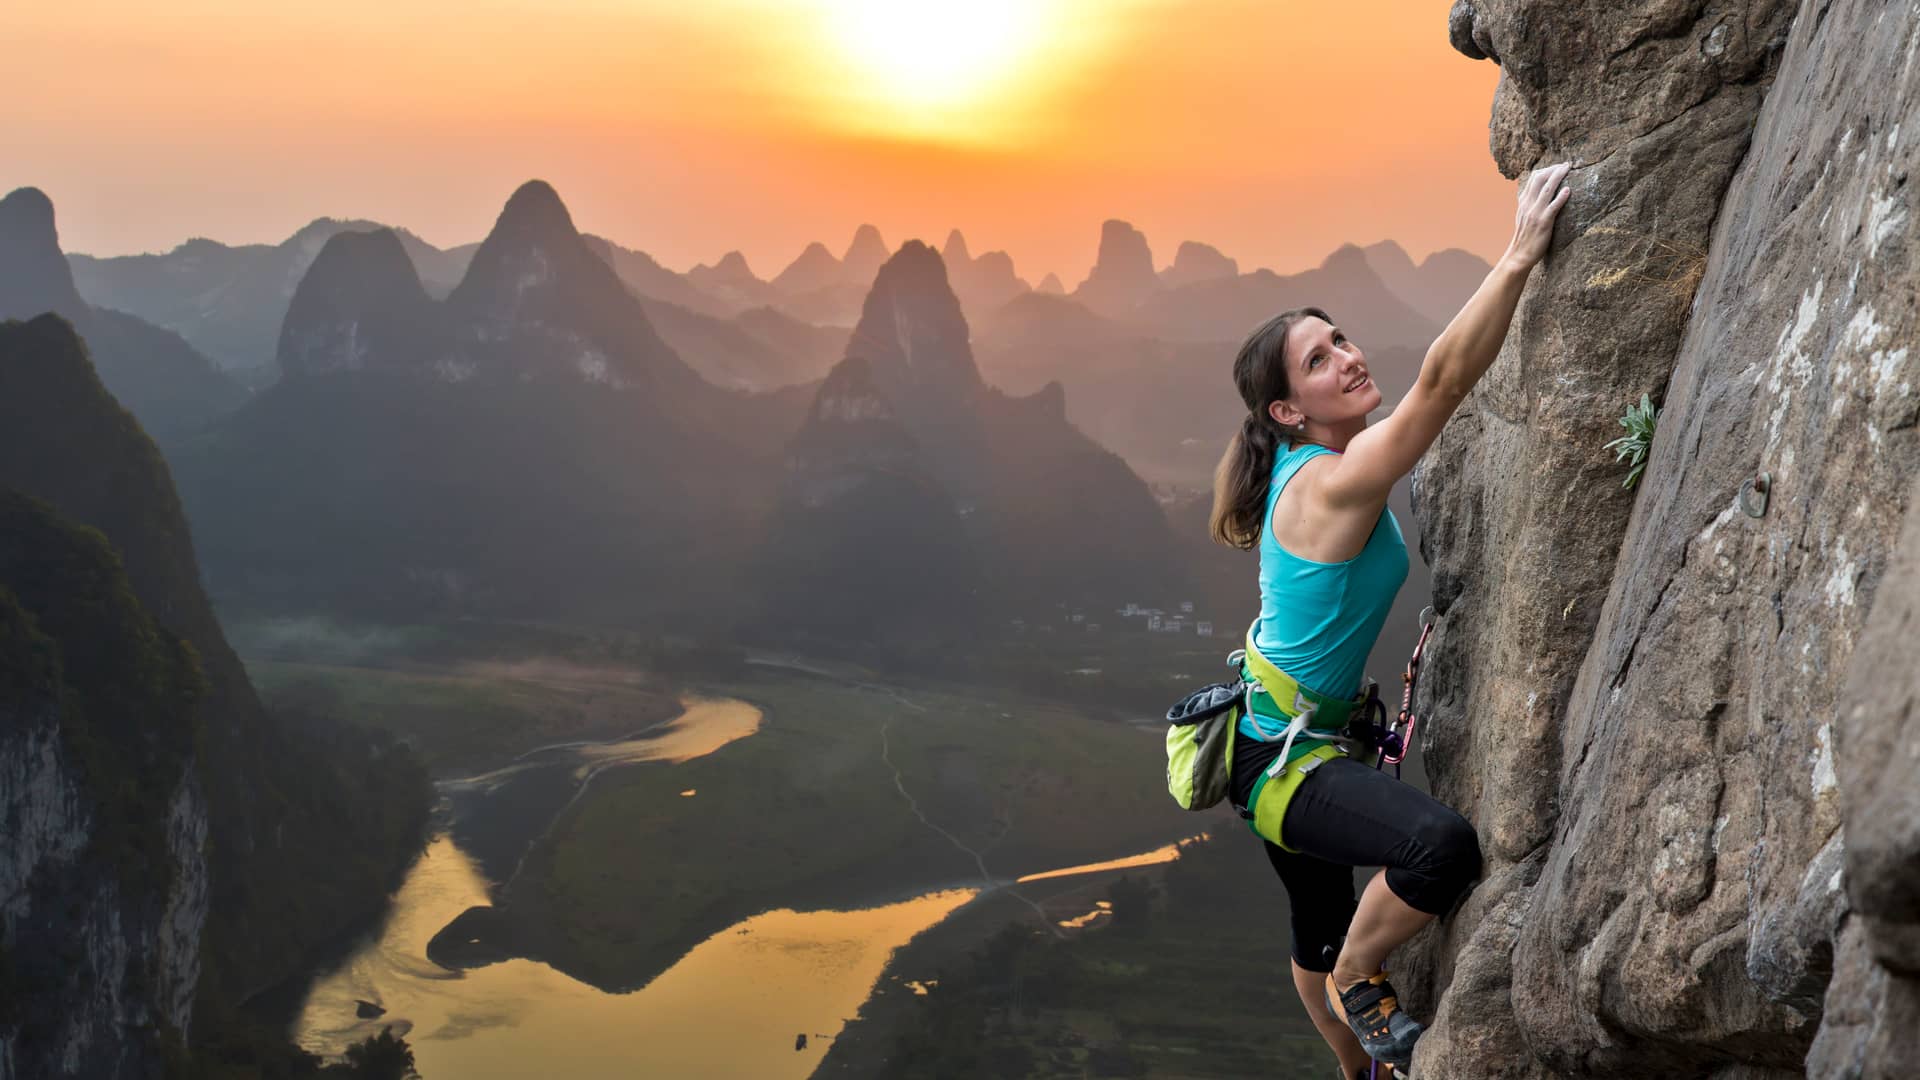 Mujer con seguro de vida en zurich escalando peligrosa montaña 